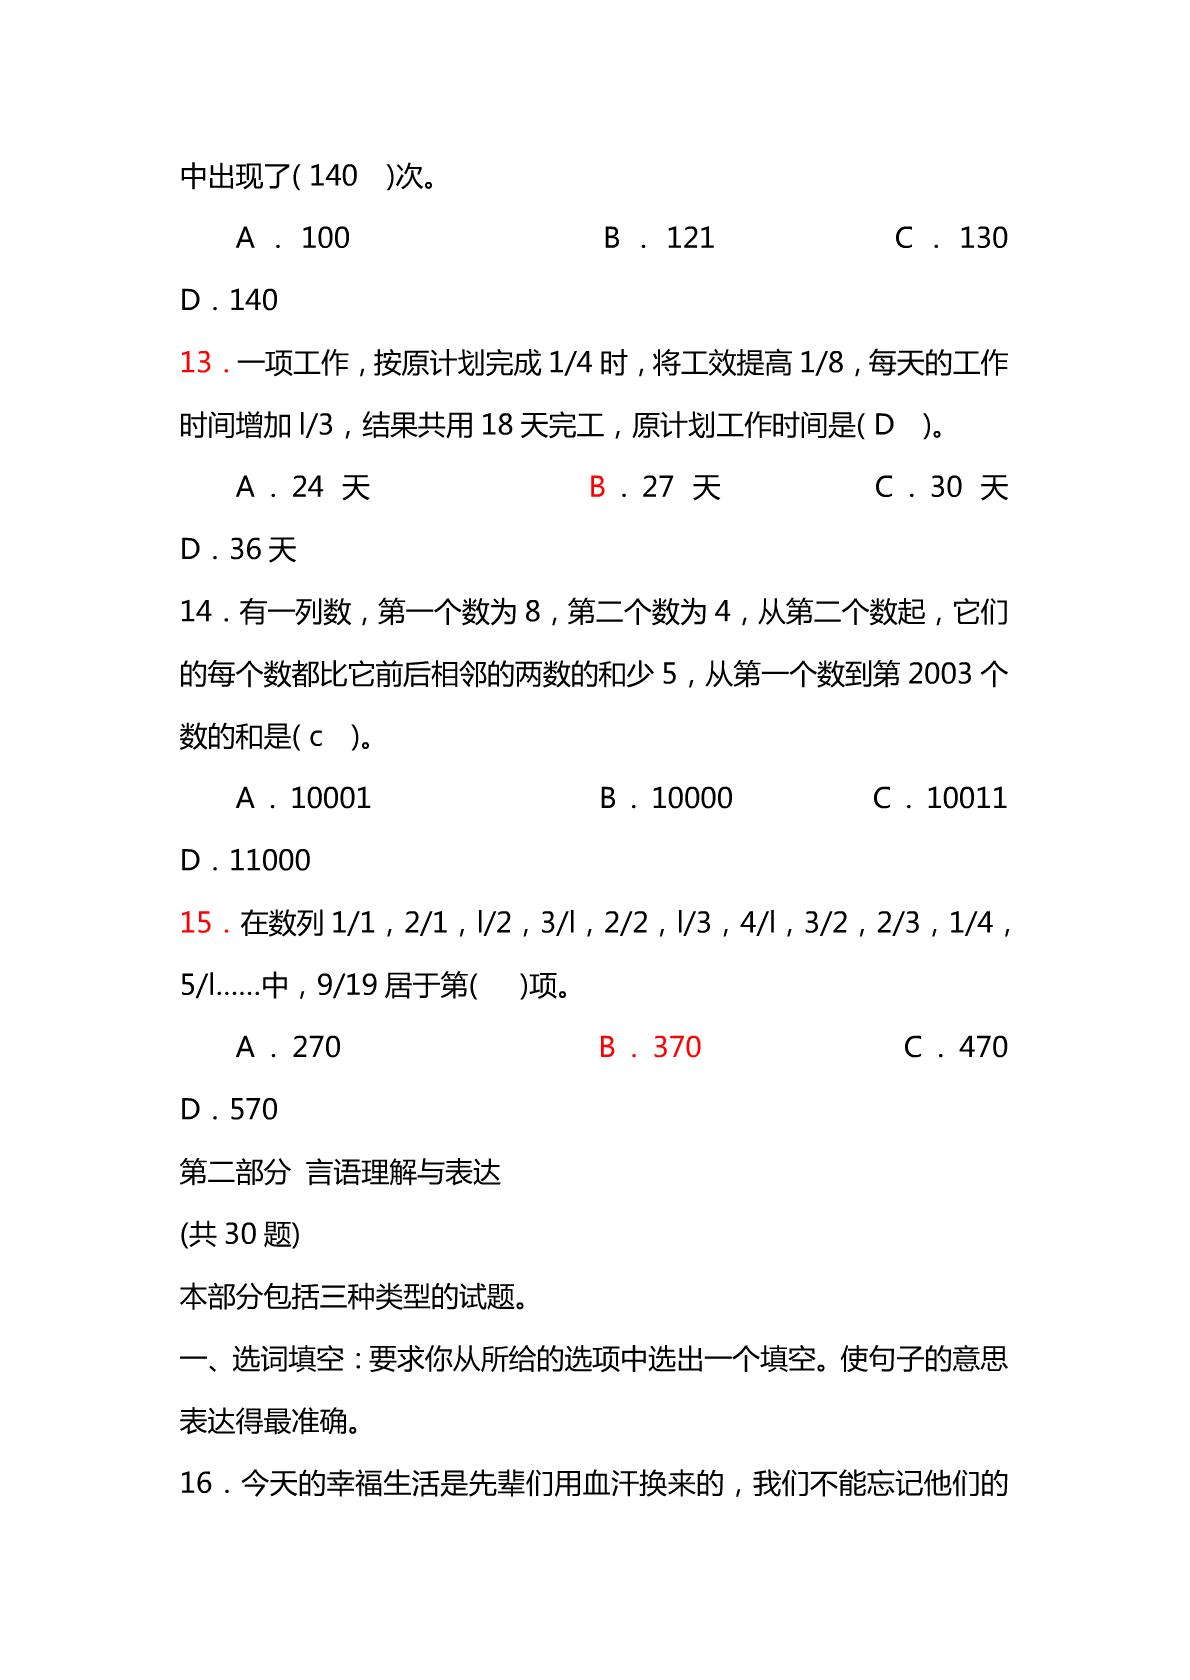 重庆公务员考试历年真题及答案解析(2008-2014)